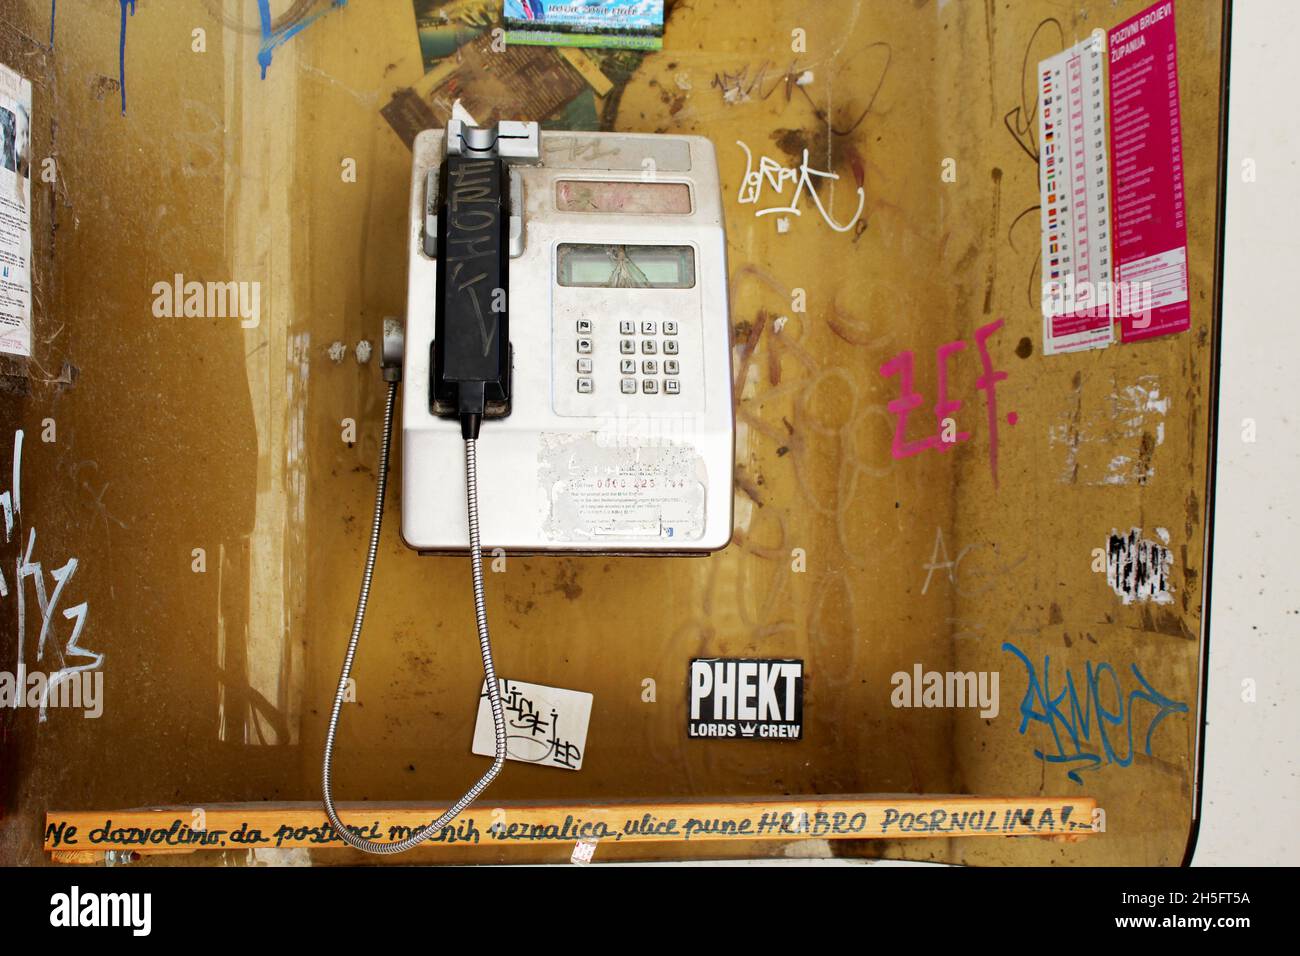 Öffentliche, offene Telefonzelle, die mit Graffiti verschmiert ist. Stock Photo